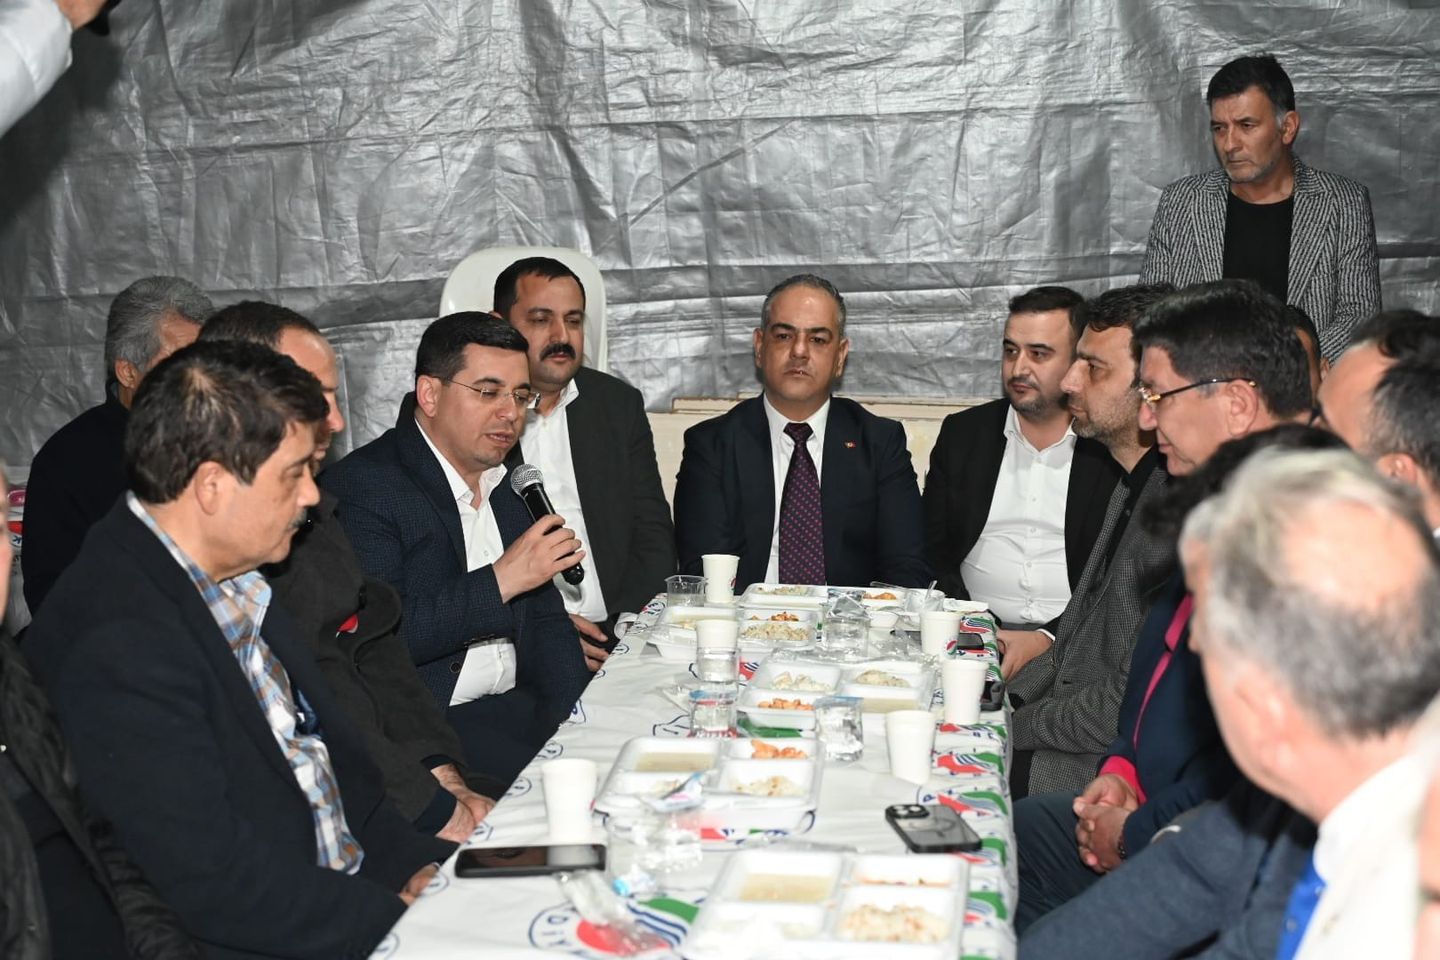 Antalya Milletvekili Mustafa Köse, Mehmet Uzunkaya için düzenlenen anma törenine katıldı. #Antalya #MustafaKöse #MehmetUzunkaya #anmatöreni